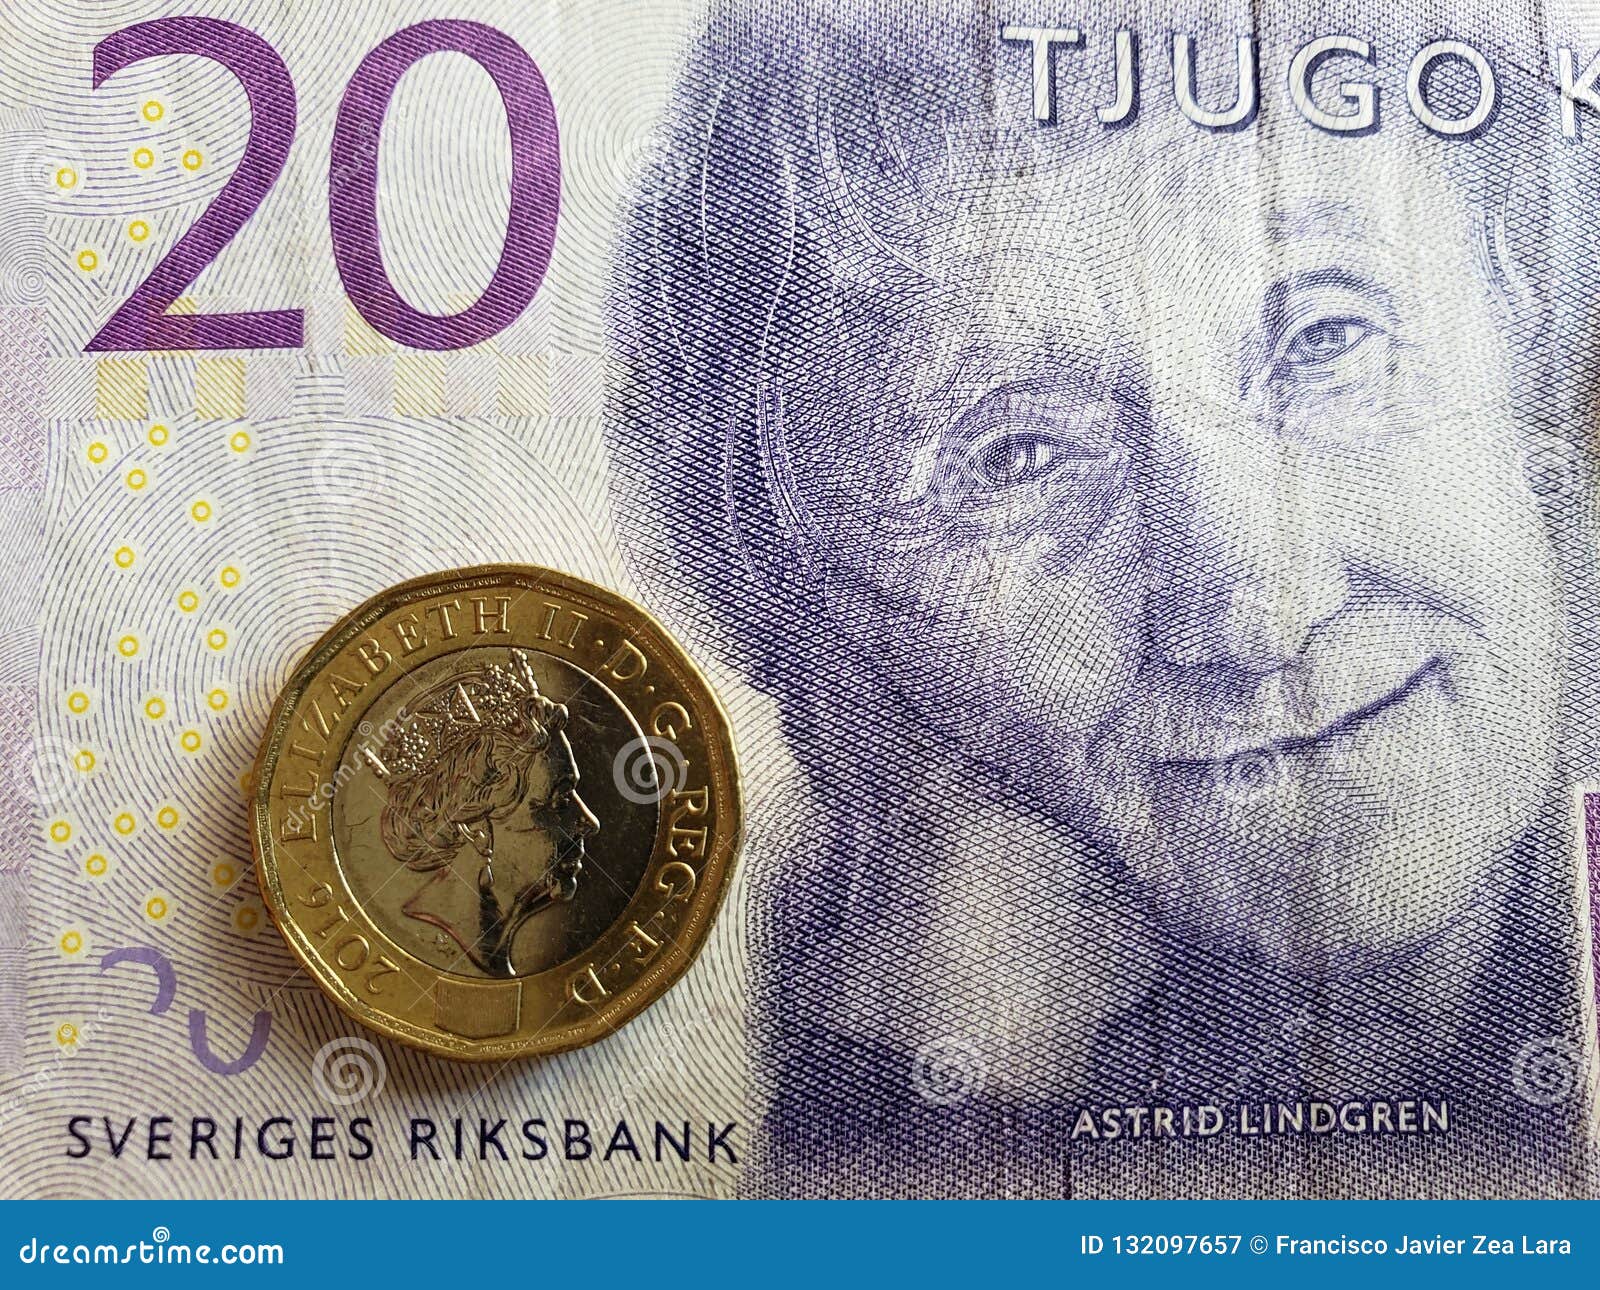 Шведская крона к евро на сегодня